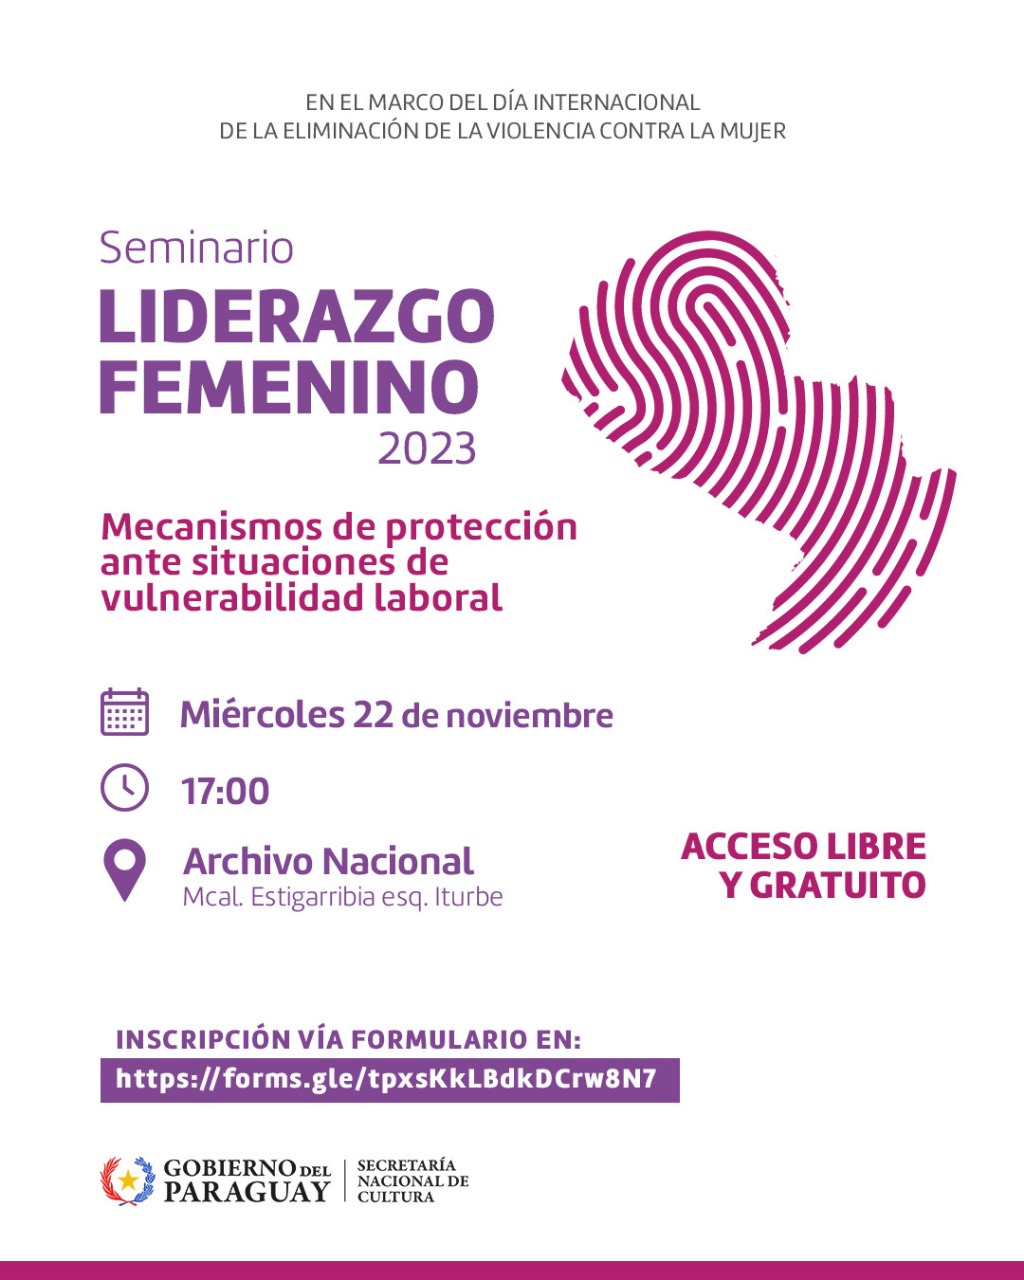 SNC invita al Seminario en Liderazgo Femenino 2023 – Mecanismos de protección ante situaciones de vulnerabilidad laboral imagen